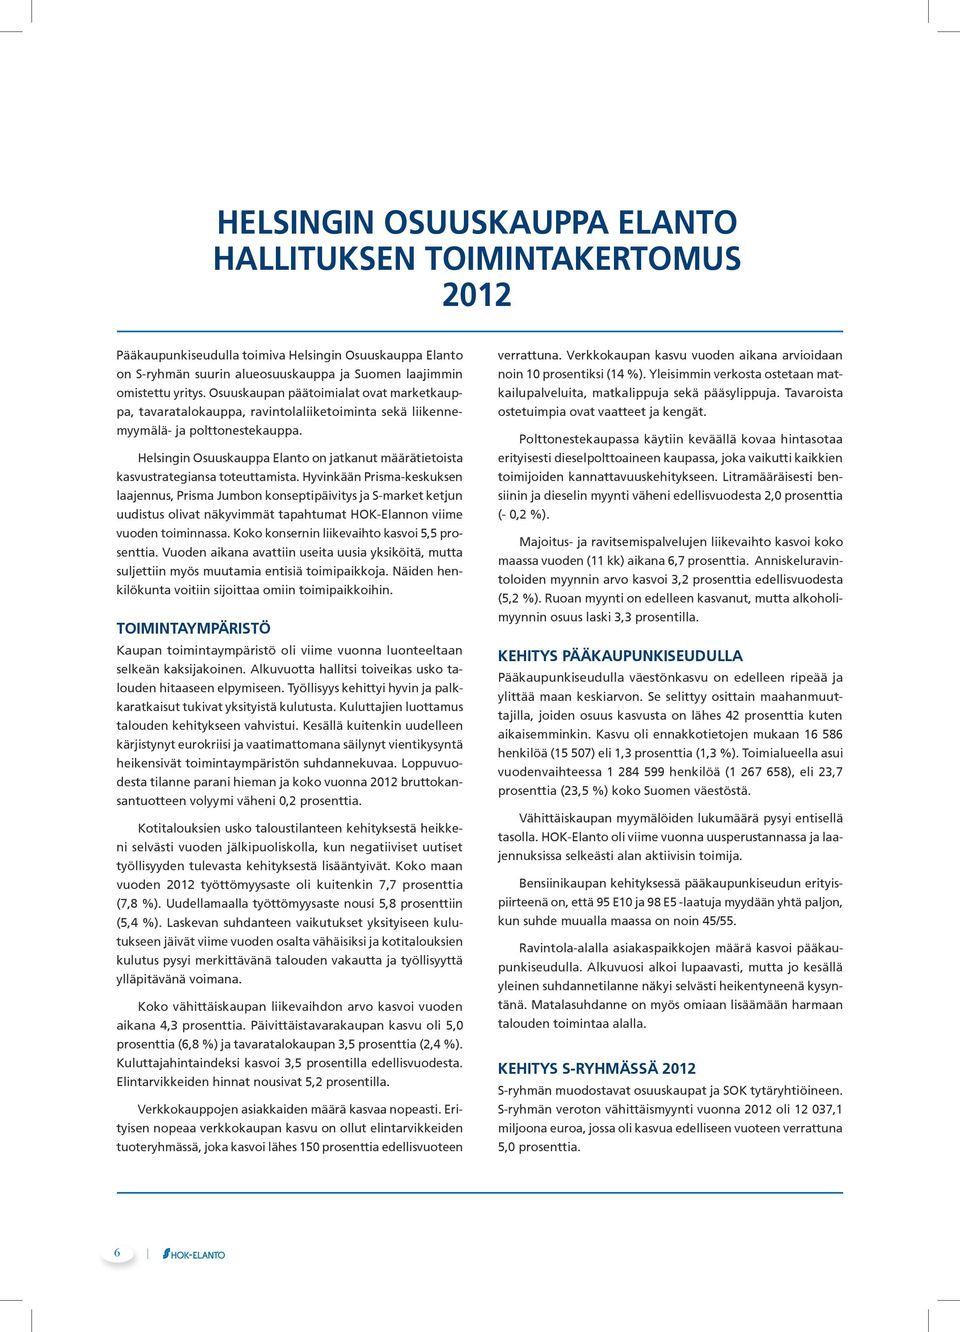 Helsingin Osuuskauppa Elanto on jatkanut määrätietoista kasvustrategiansa toteuttamista.